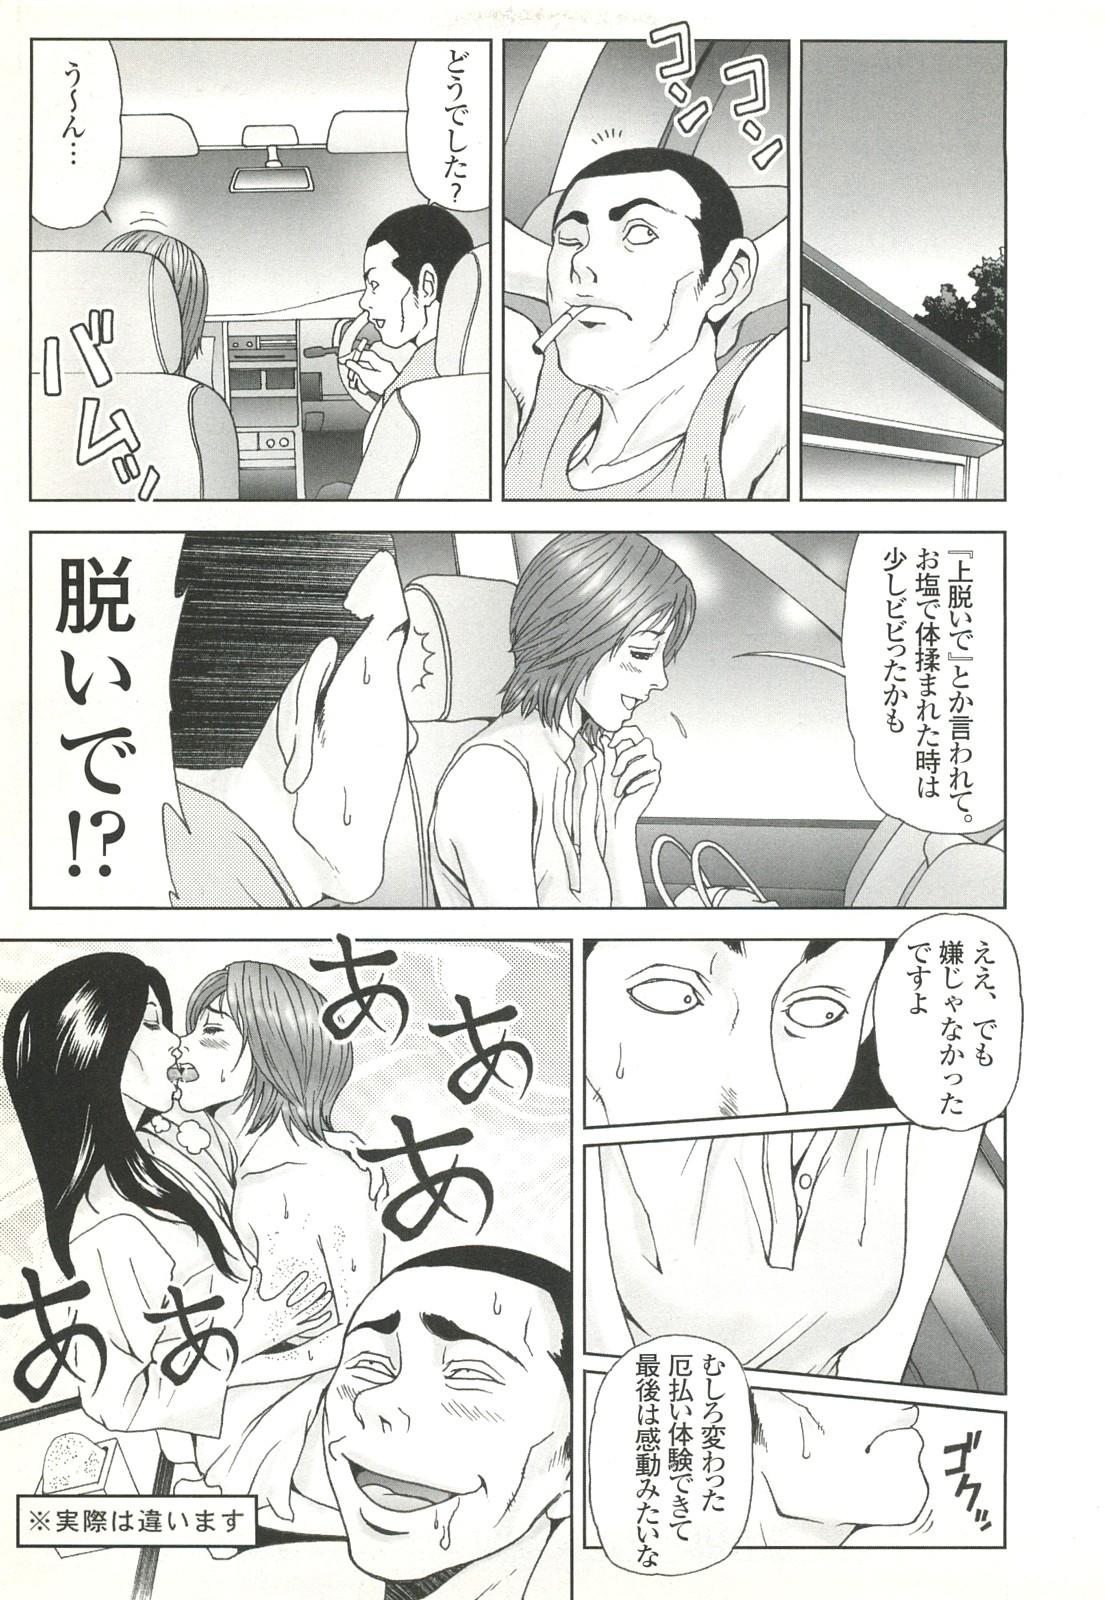 コミック裏モノJAPAN Vol.18 今井のりたつスペシャル号 48